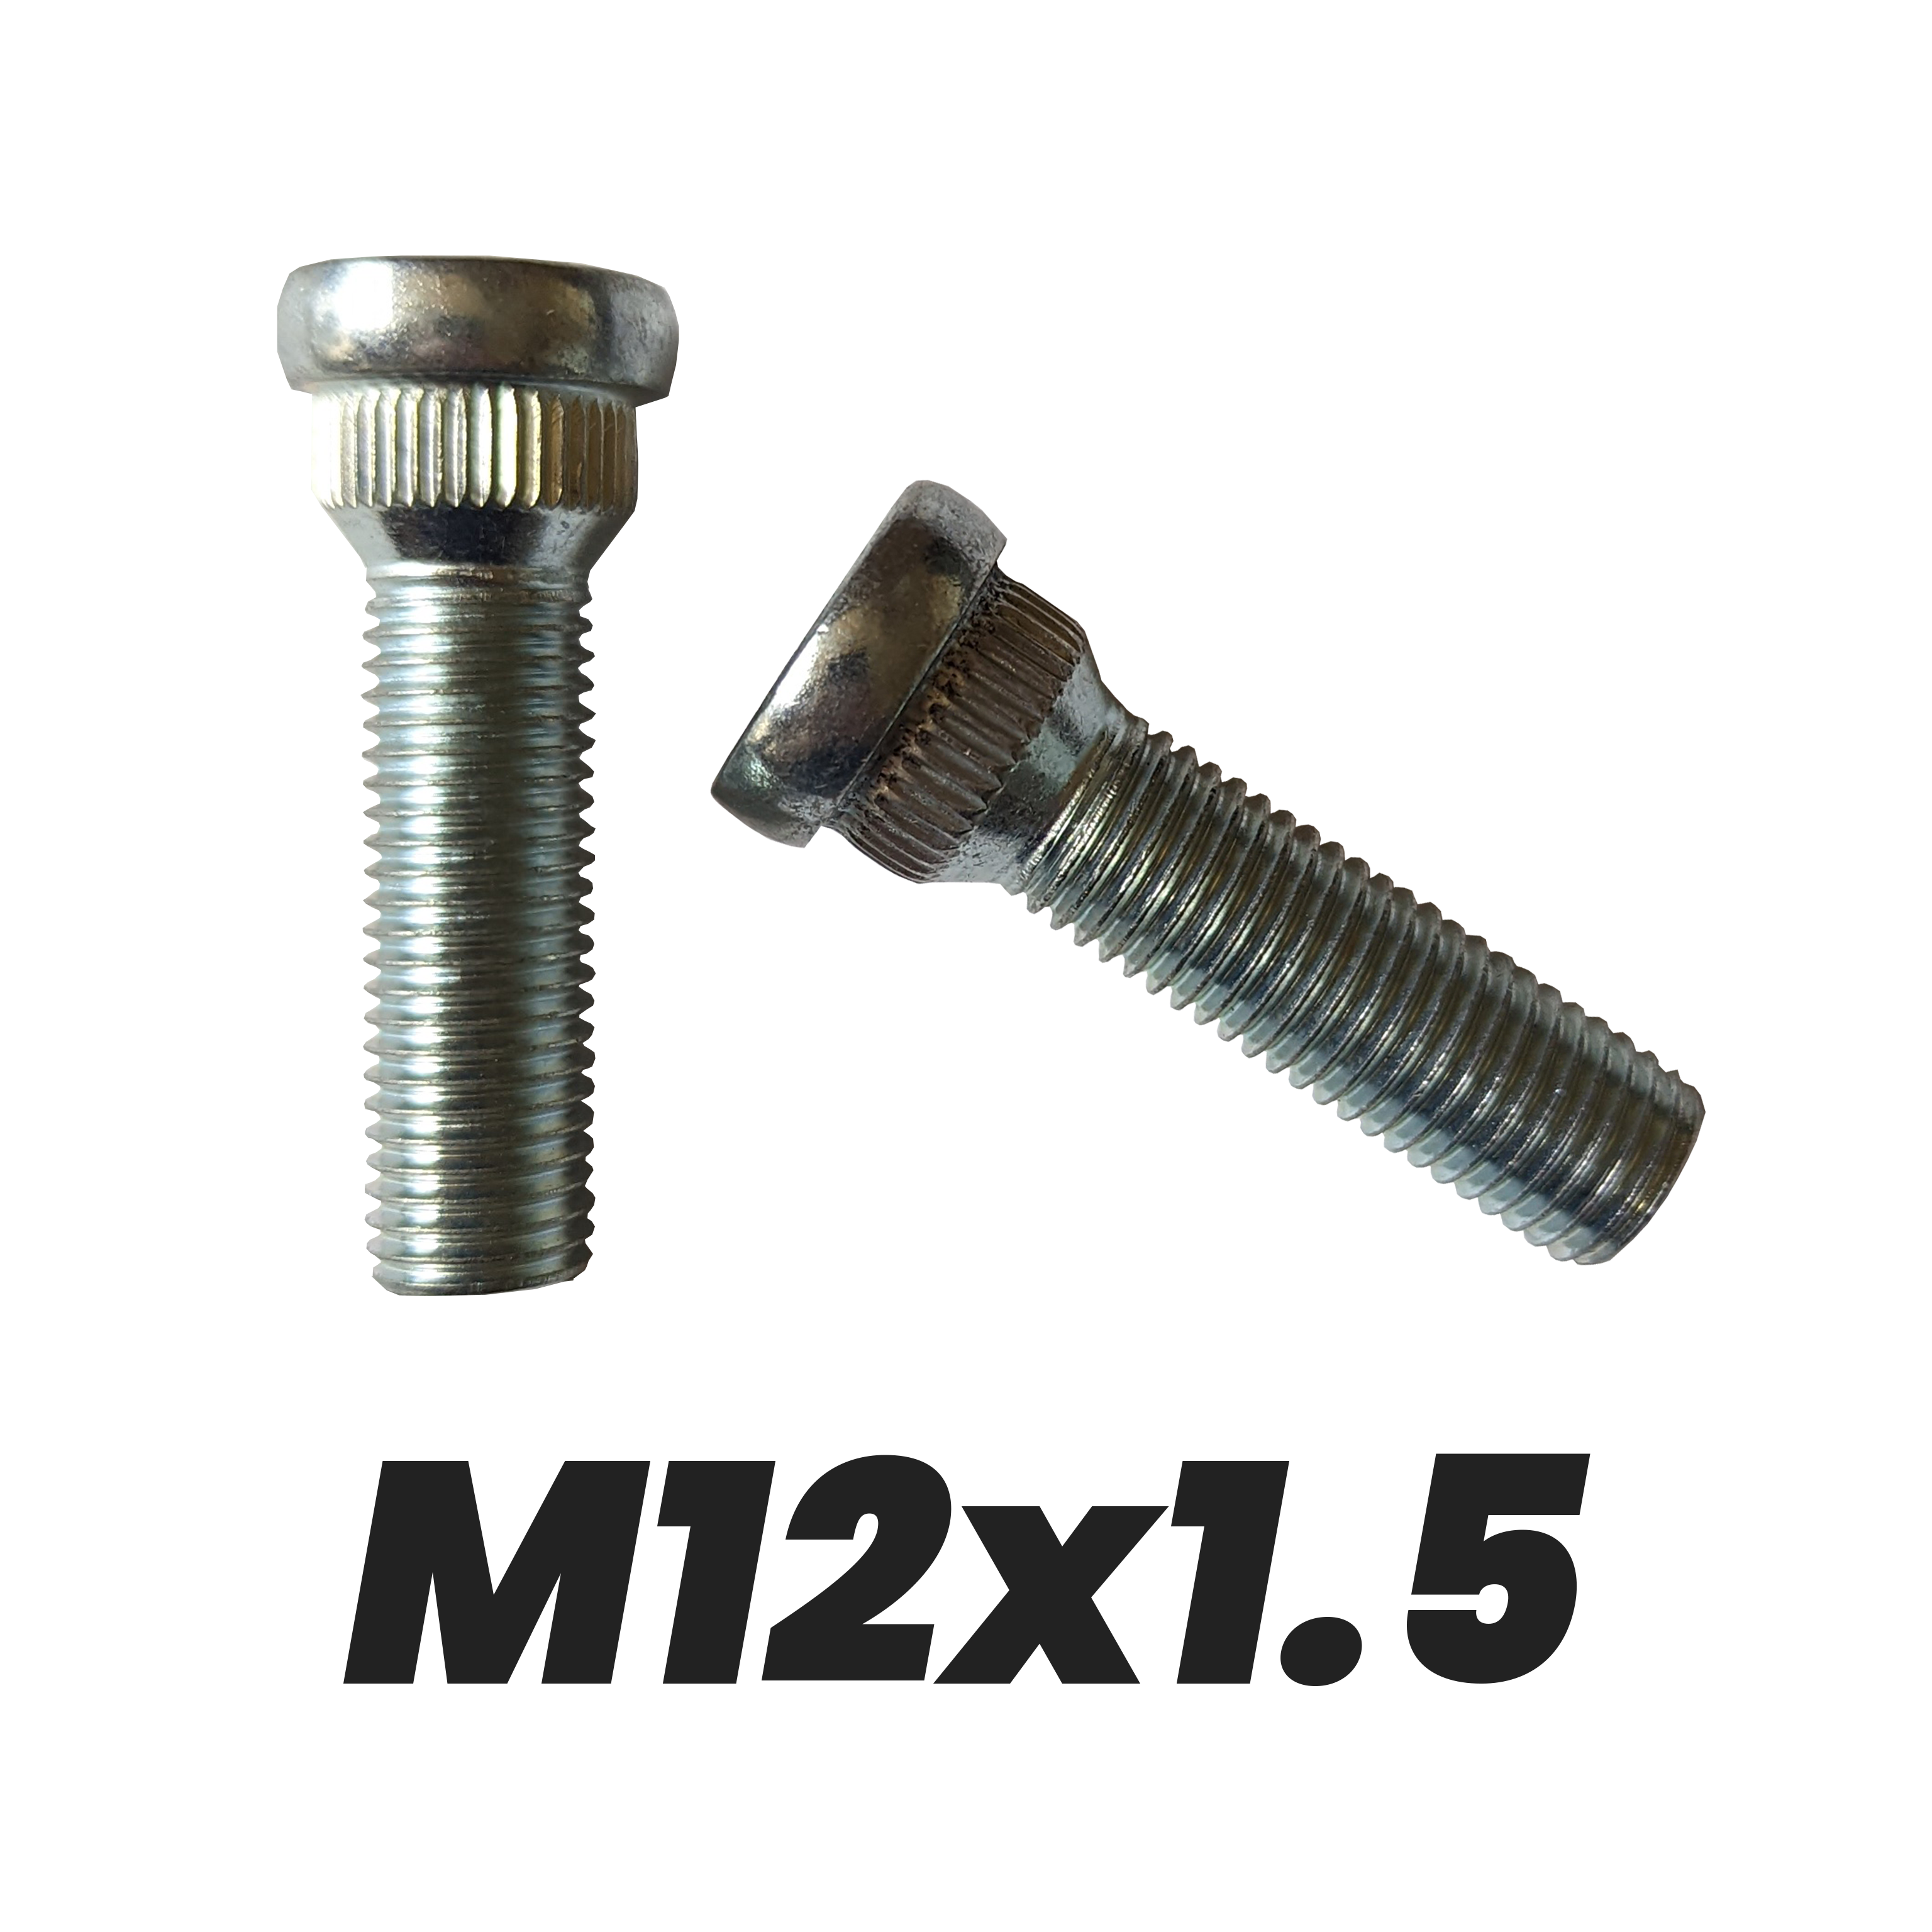 M12x1.5 Lug Studs